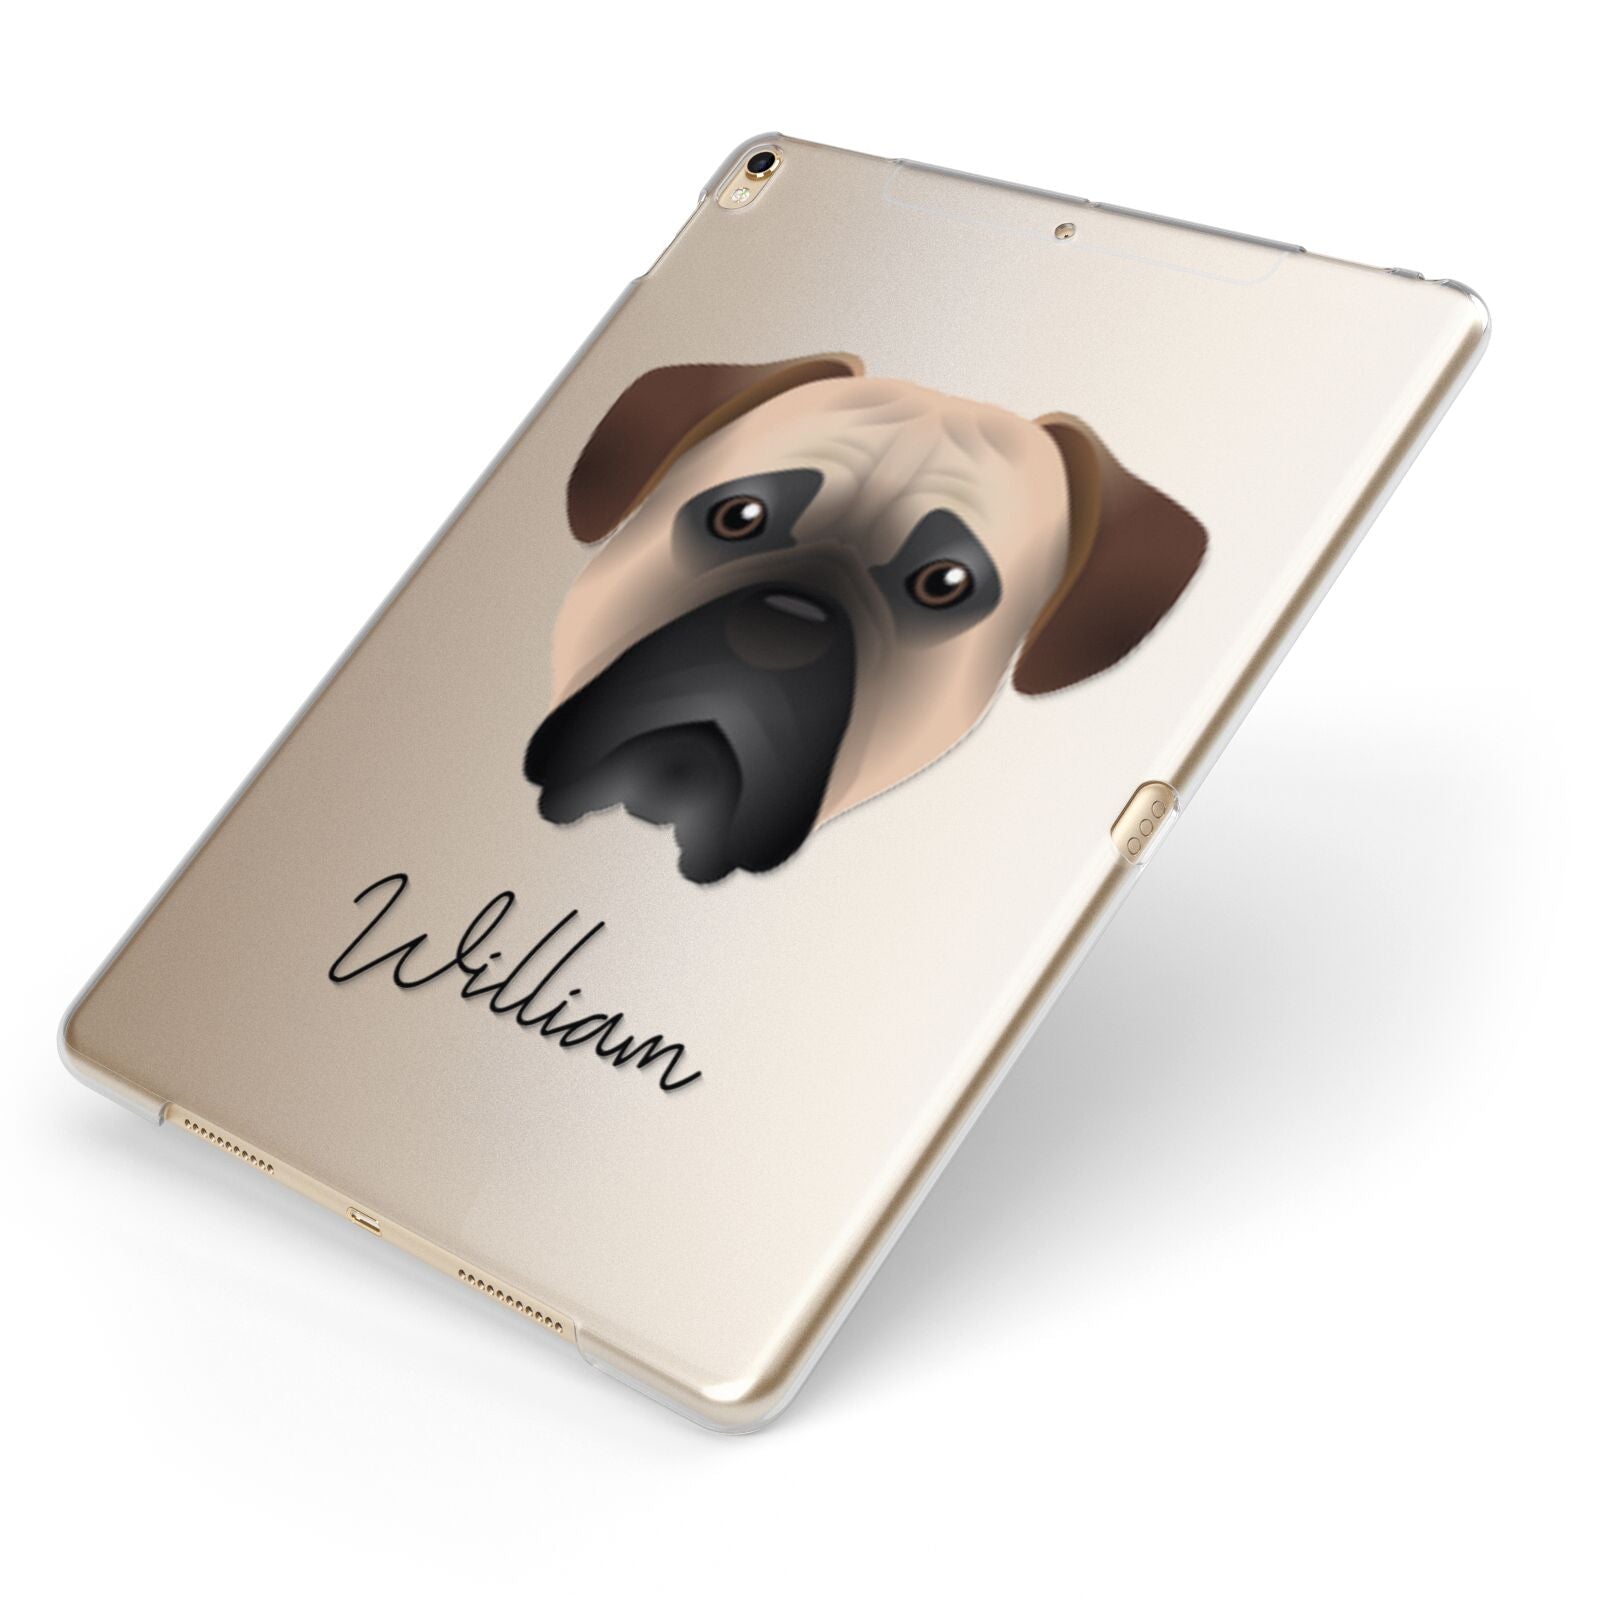 Bullmastiff Personalised Apple iPad Case on Gold iPad Side View